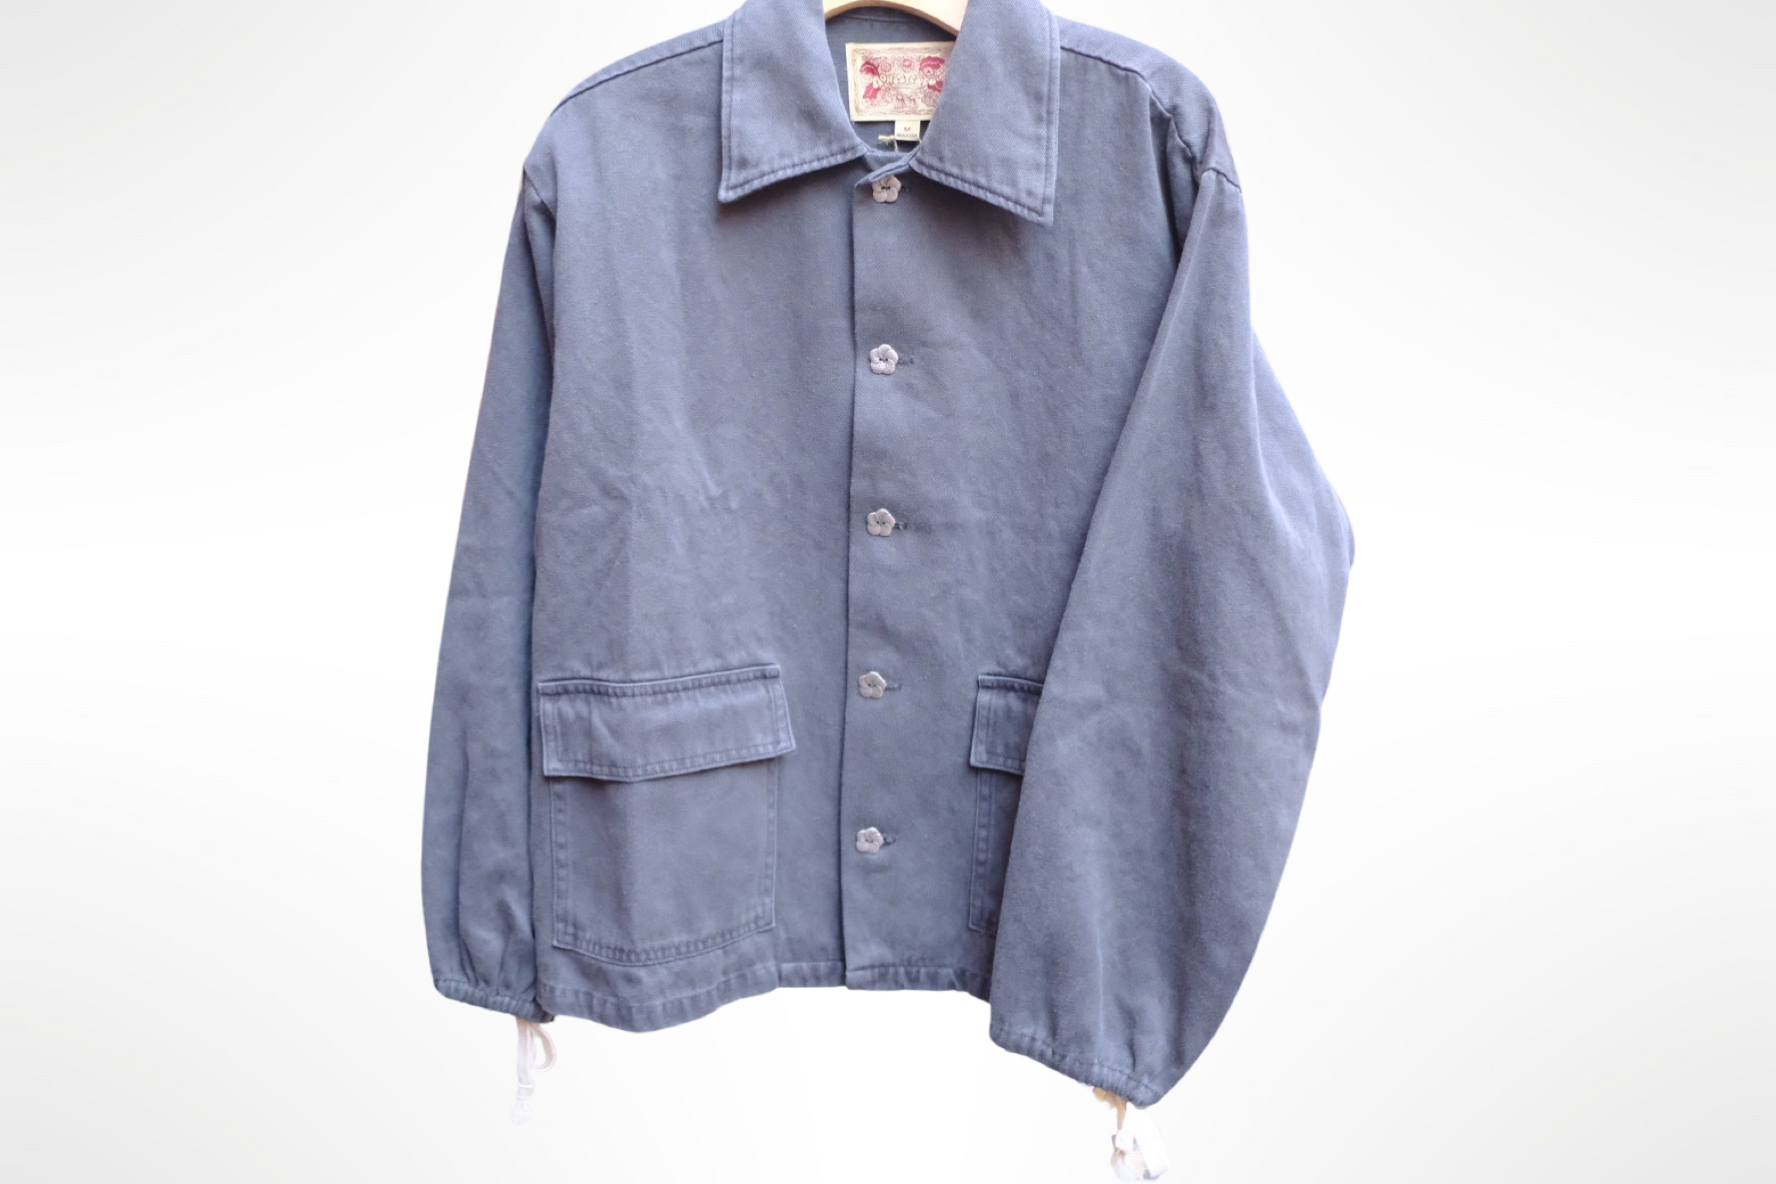 hemp twill work jacket in bluish/grey